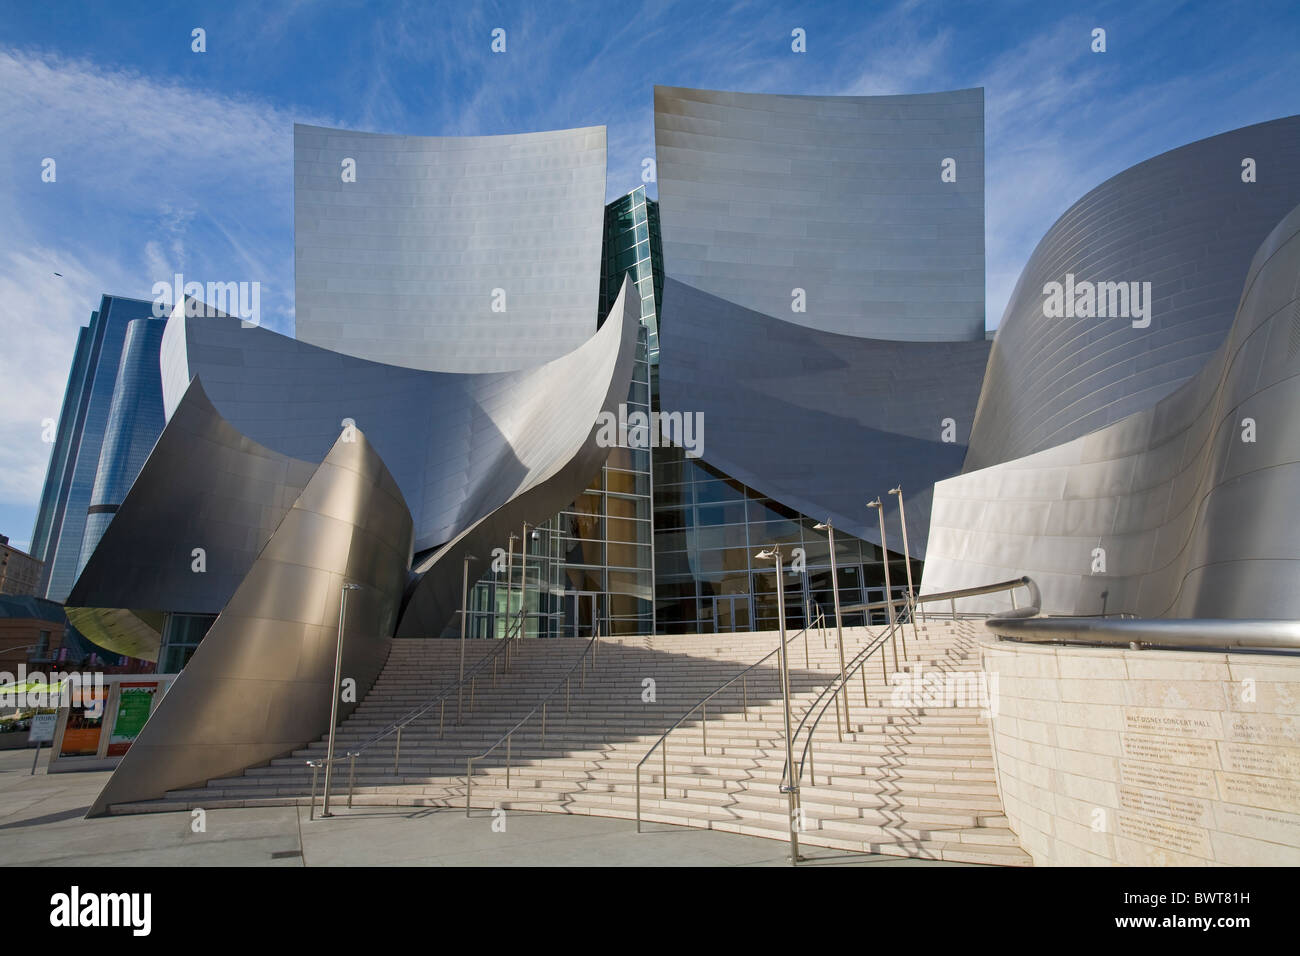 Walt Disney Concert Hall von Frank Gehry, Los Angeles Music Center, Grand Avenue, die Innenstadt von Los Angeles, Kalifornien, USA Stockfoto